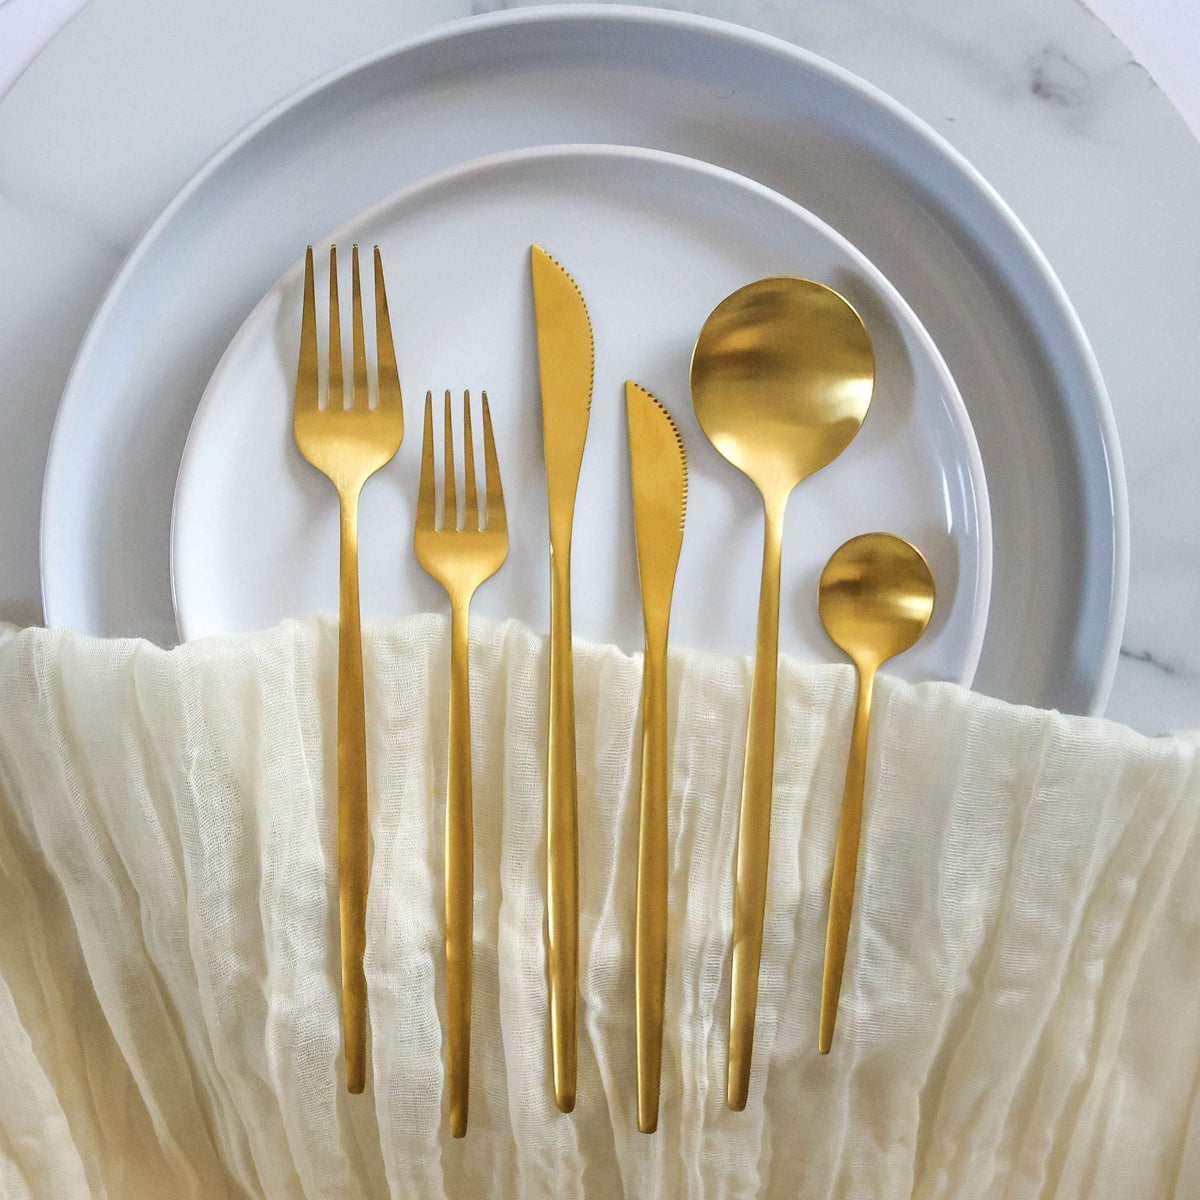 Sample Cutlery